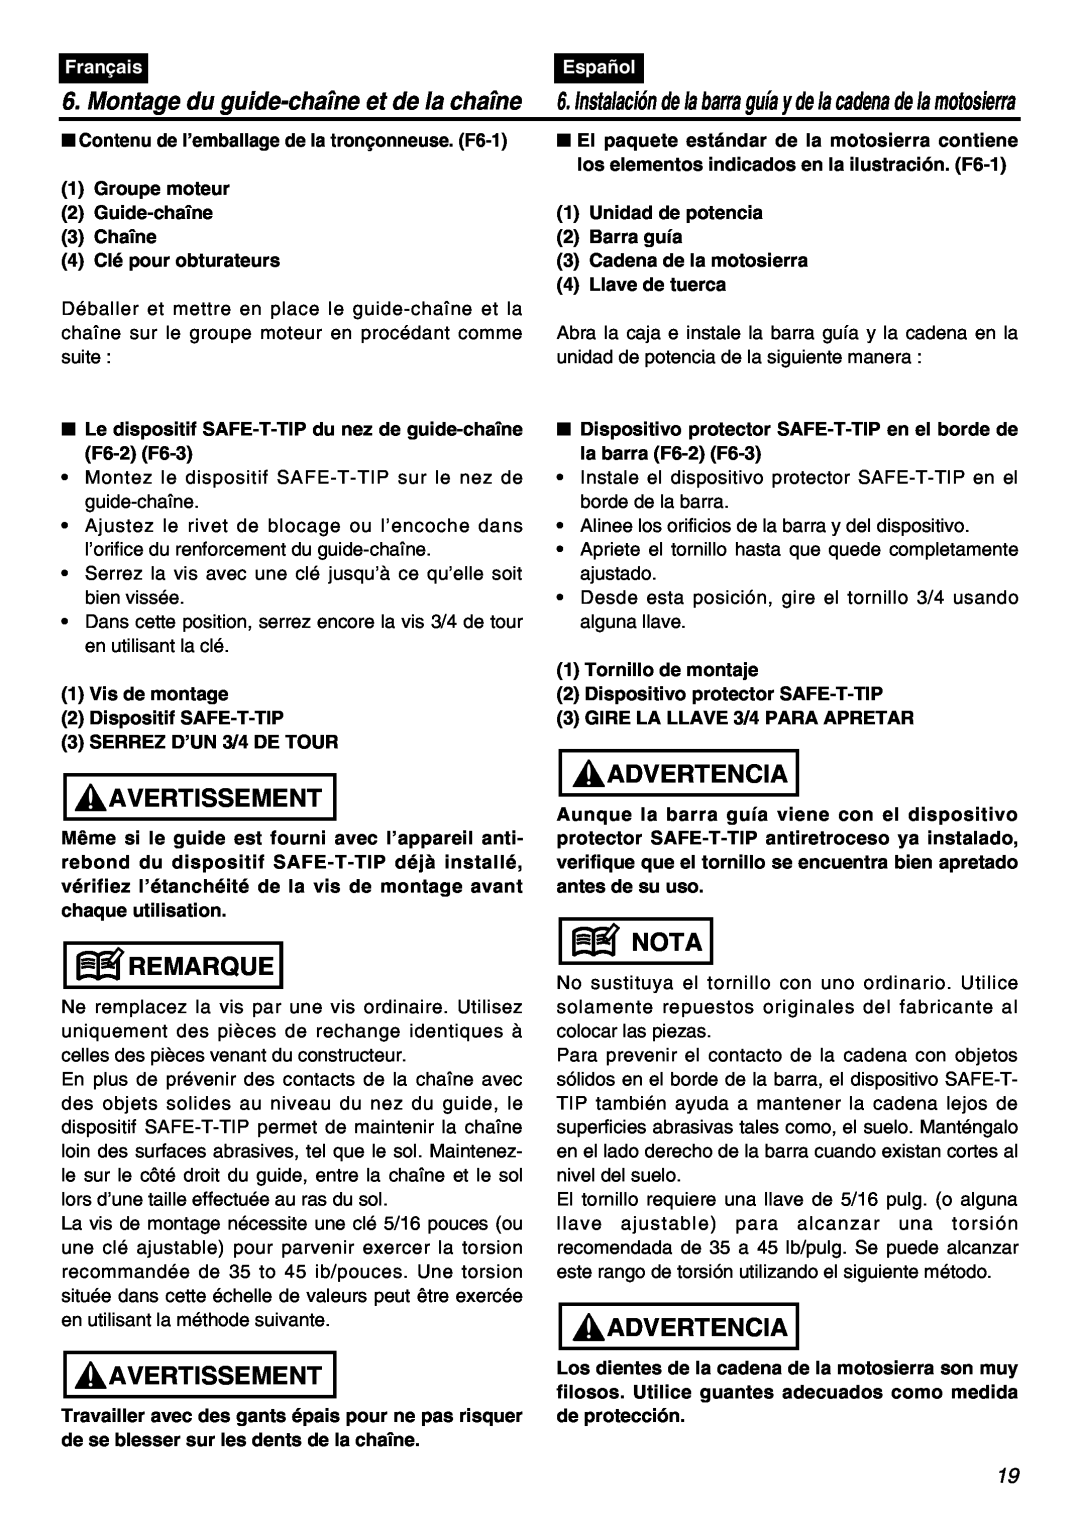 RedMax GZ400 manual Montage du guide-chaîne et de la chaîne, Français, Español, Avertissement, Remarque, Advertencia, Nota 